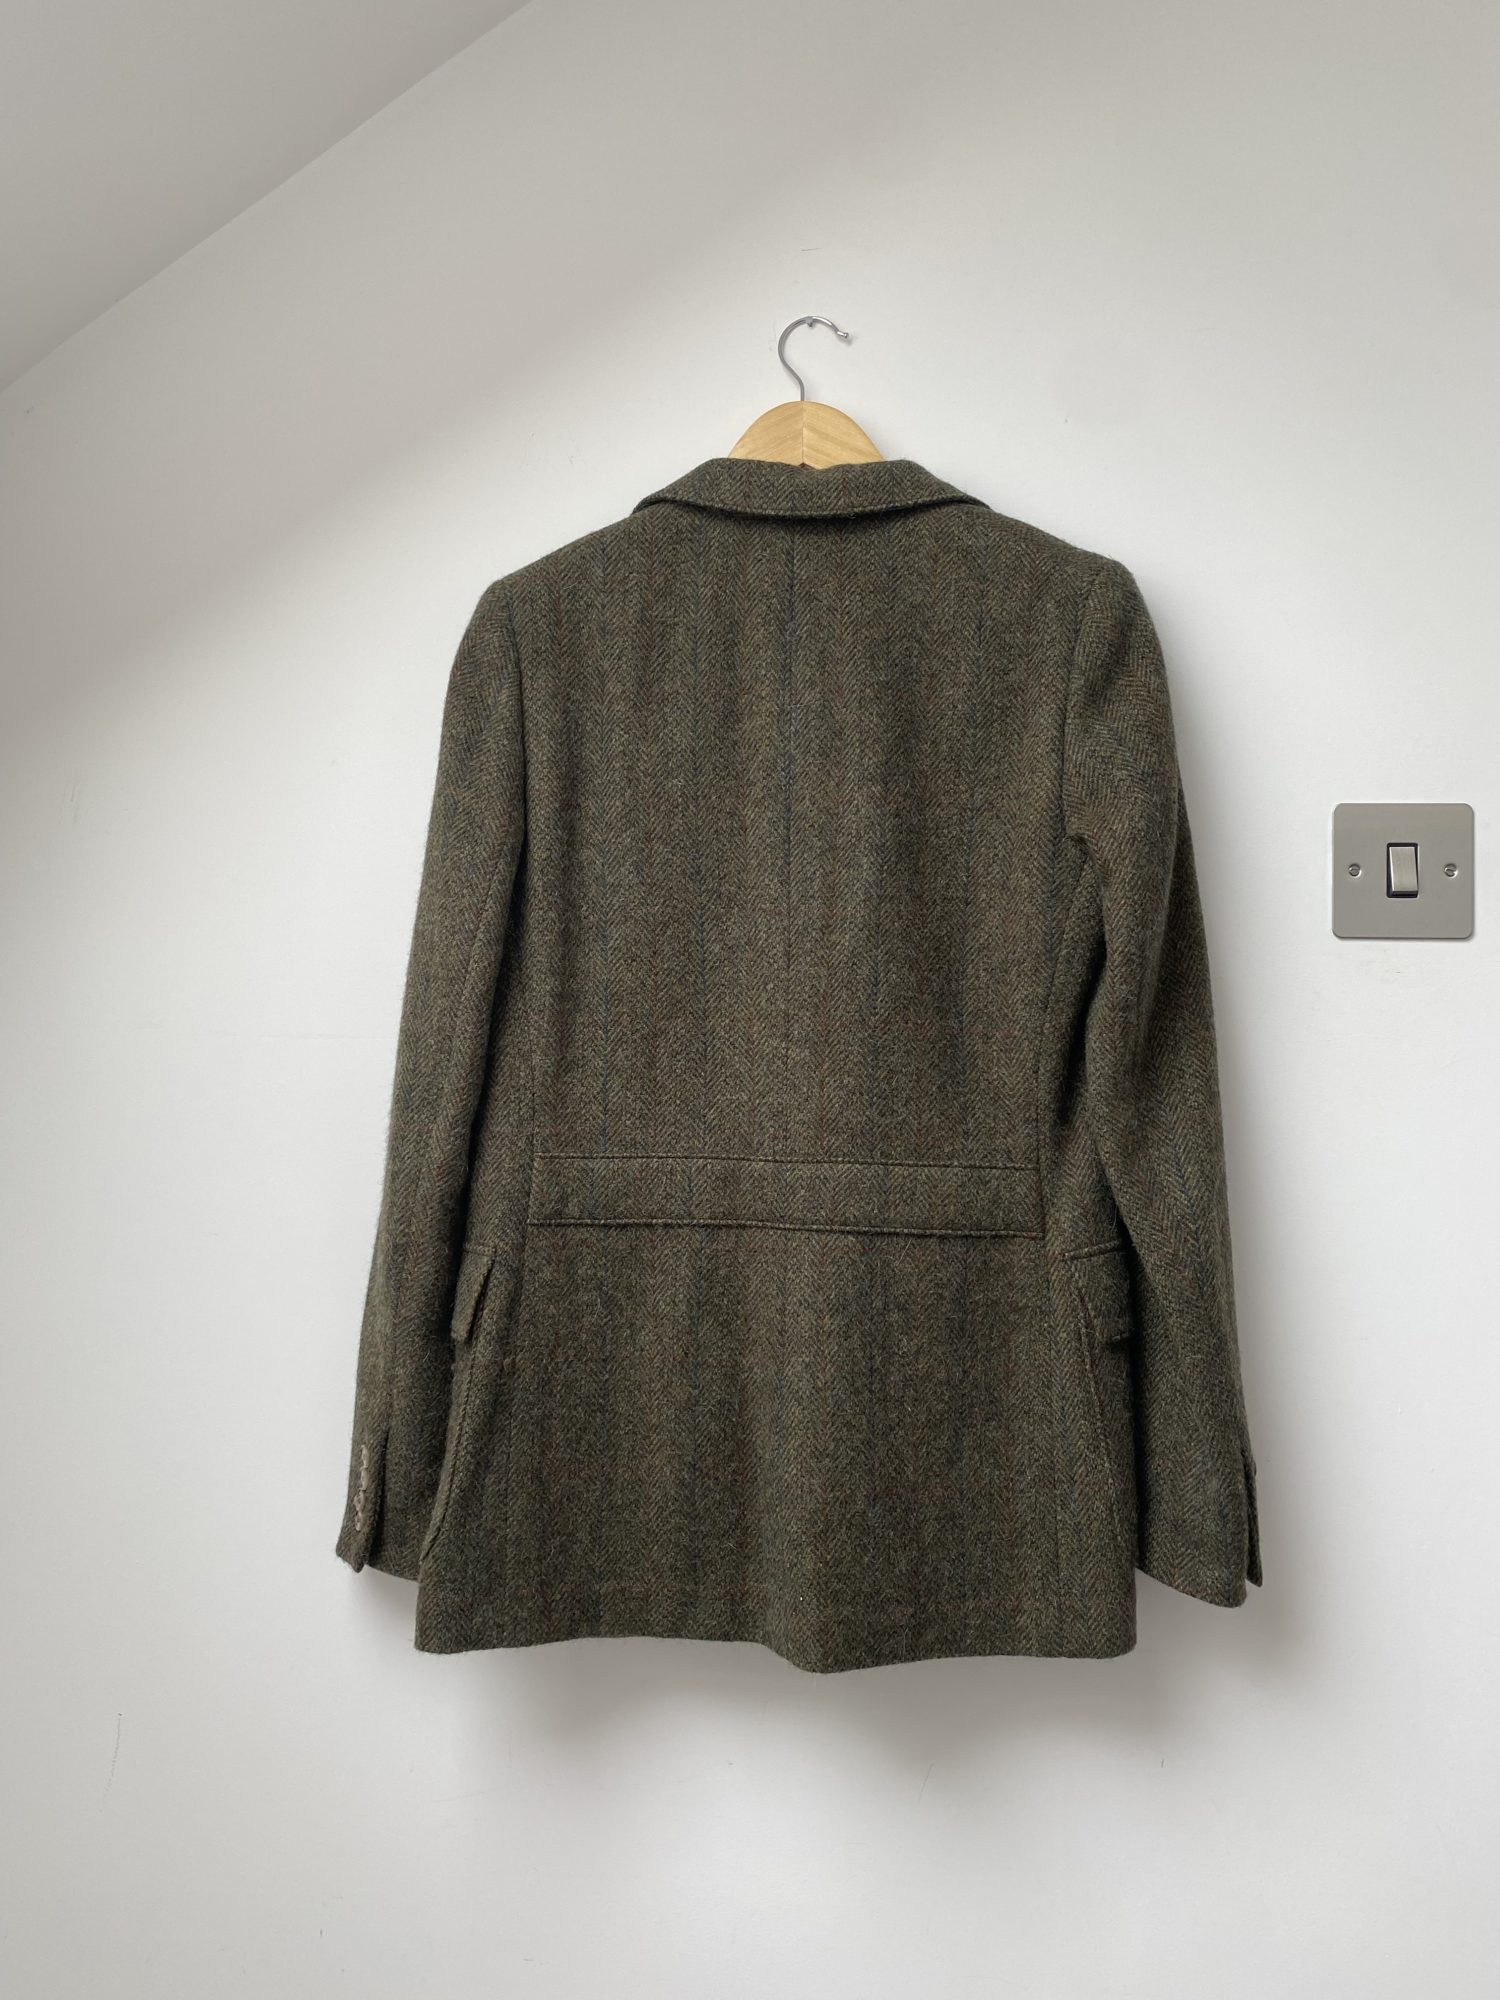 Ralph Lauren tweed blazer – StyleSwap